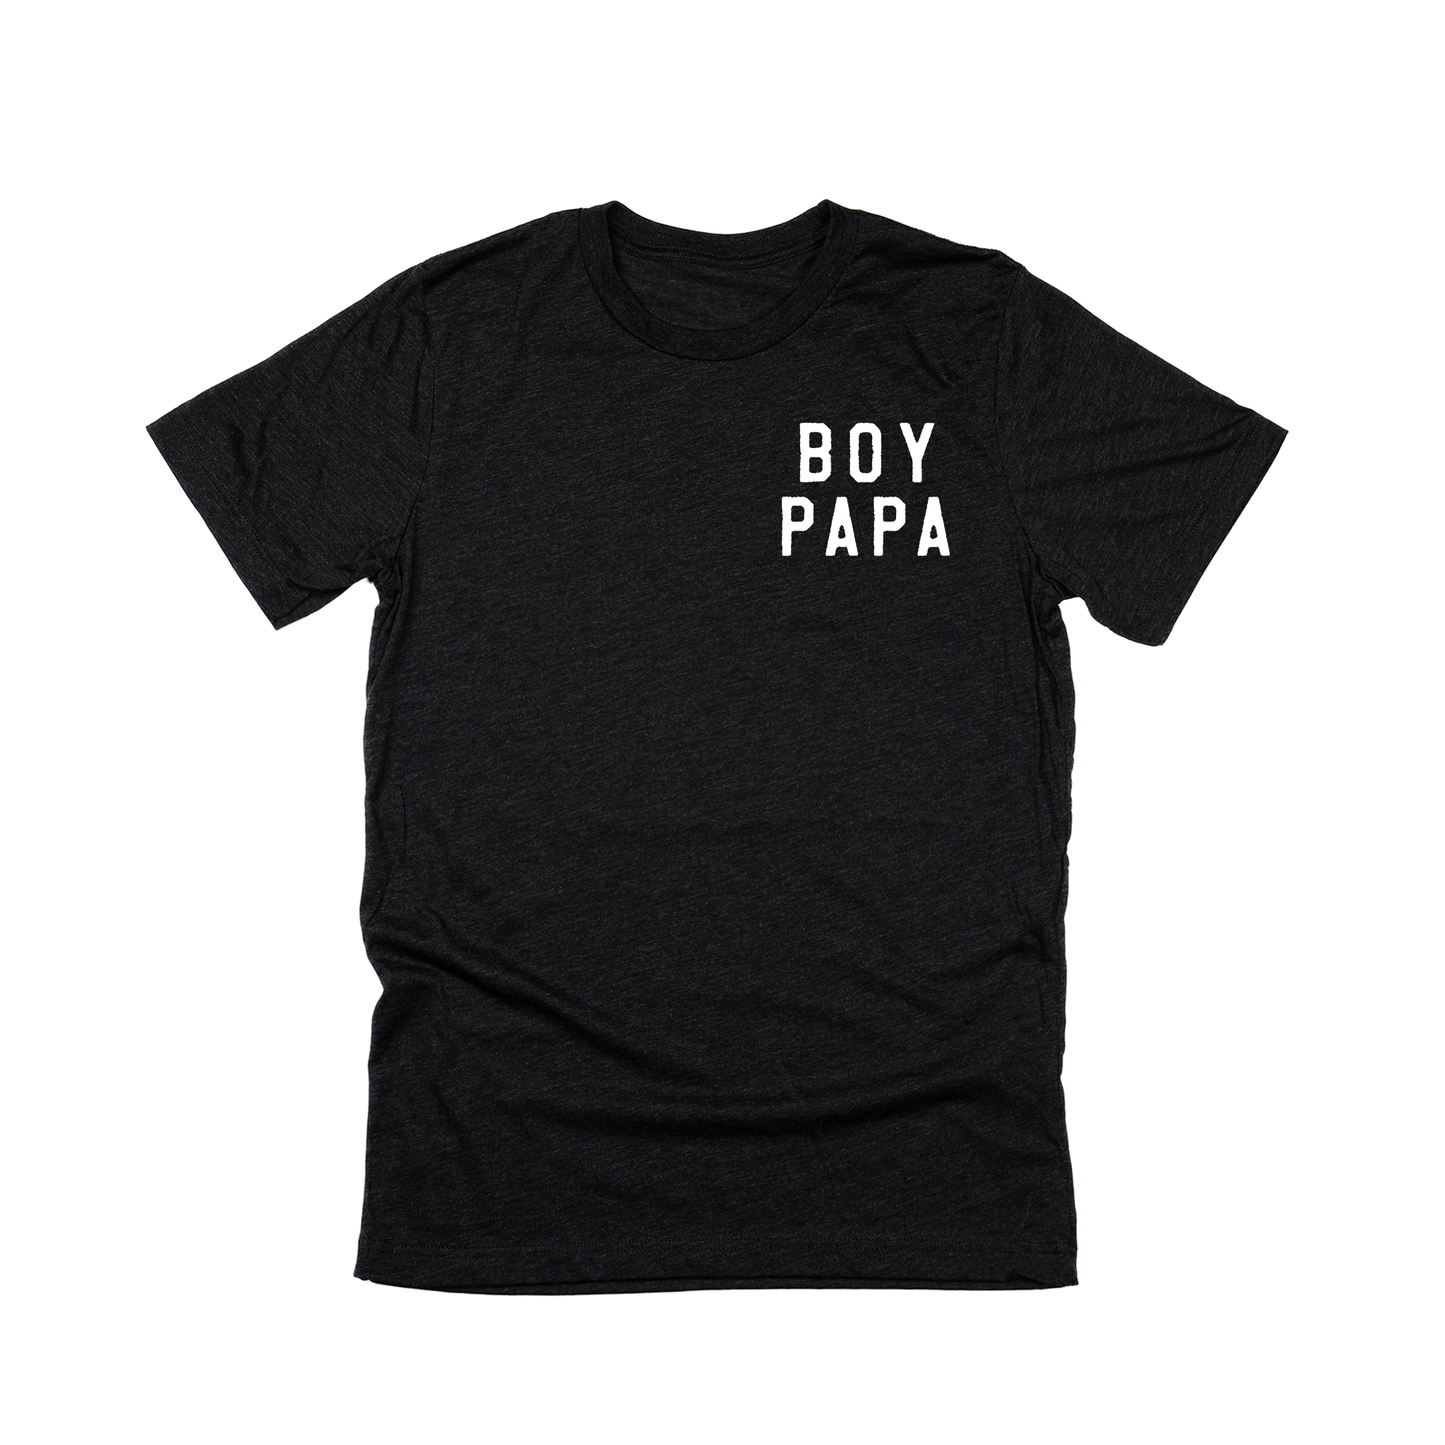 Boy Papa (Pocket, White) - Tee (Charcoal Black)